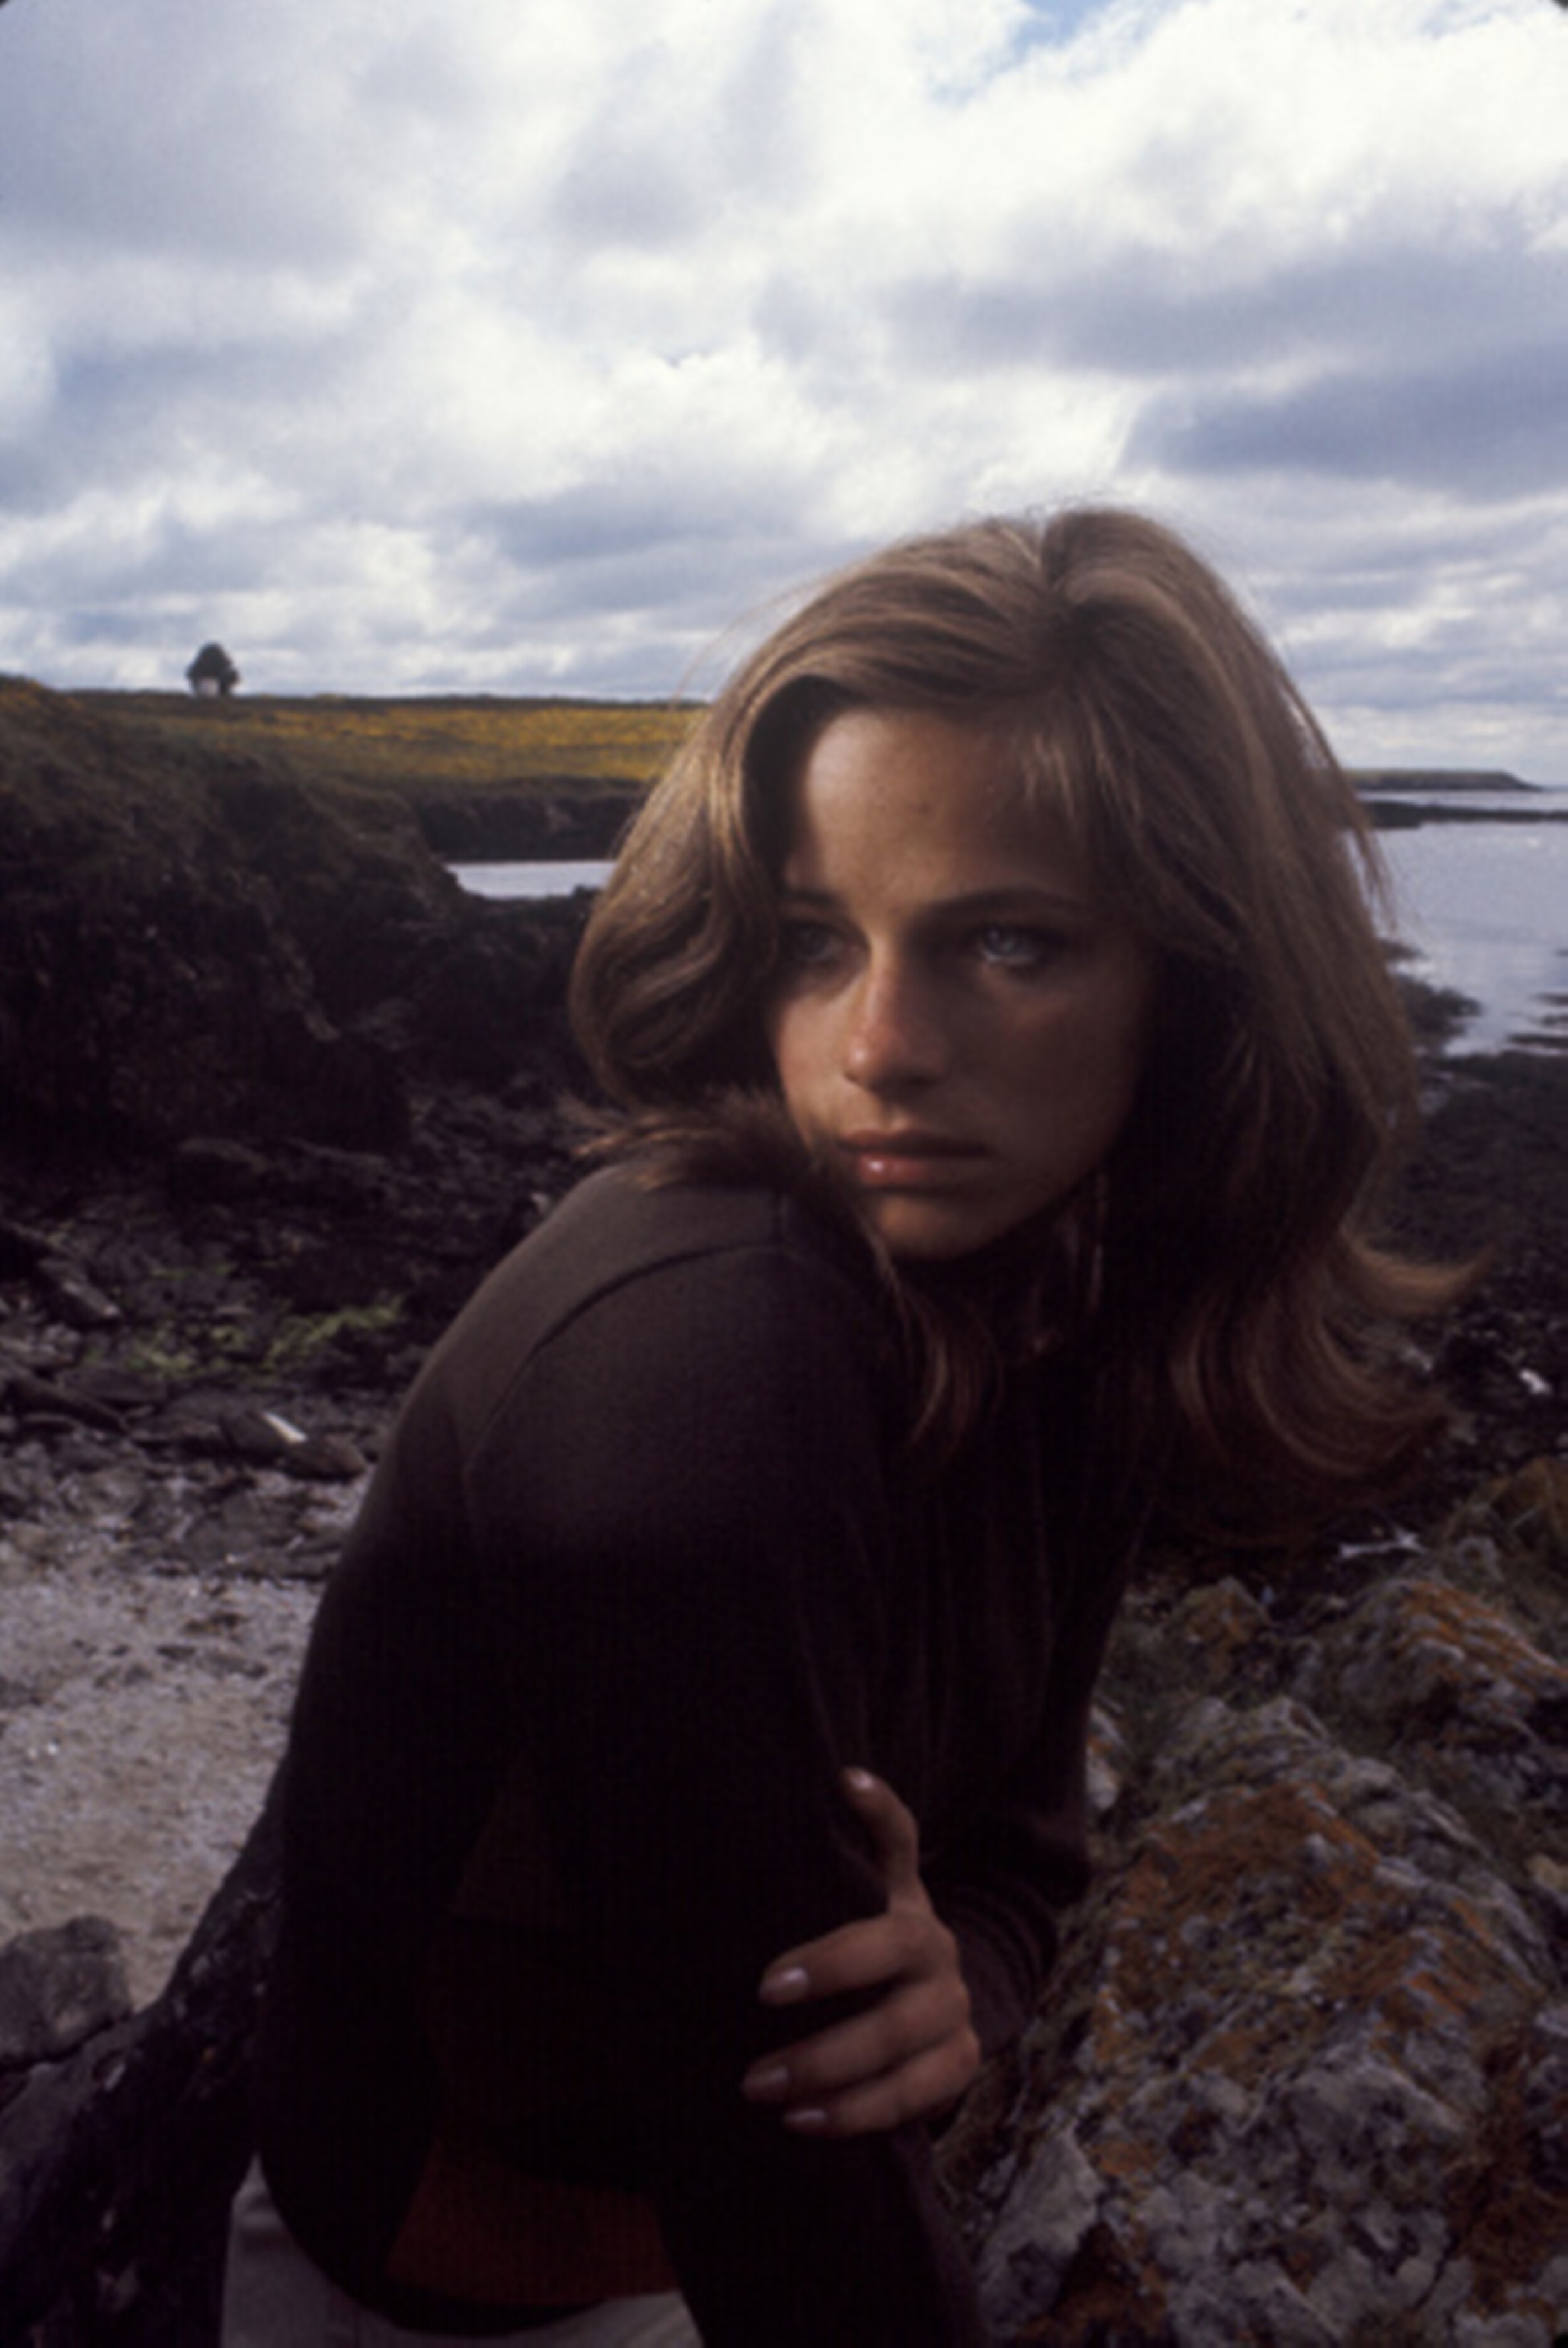 Charlotte Rampling, 1965. Photo by Jerry Schatzberg.